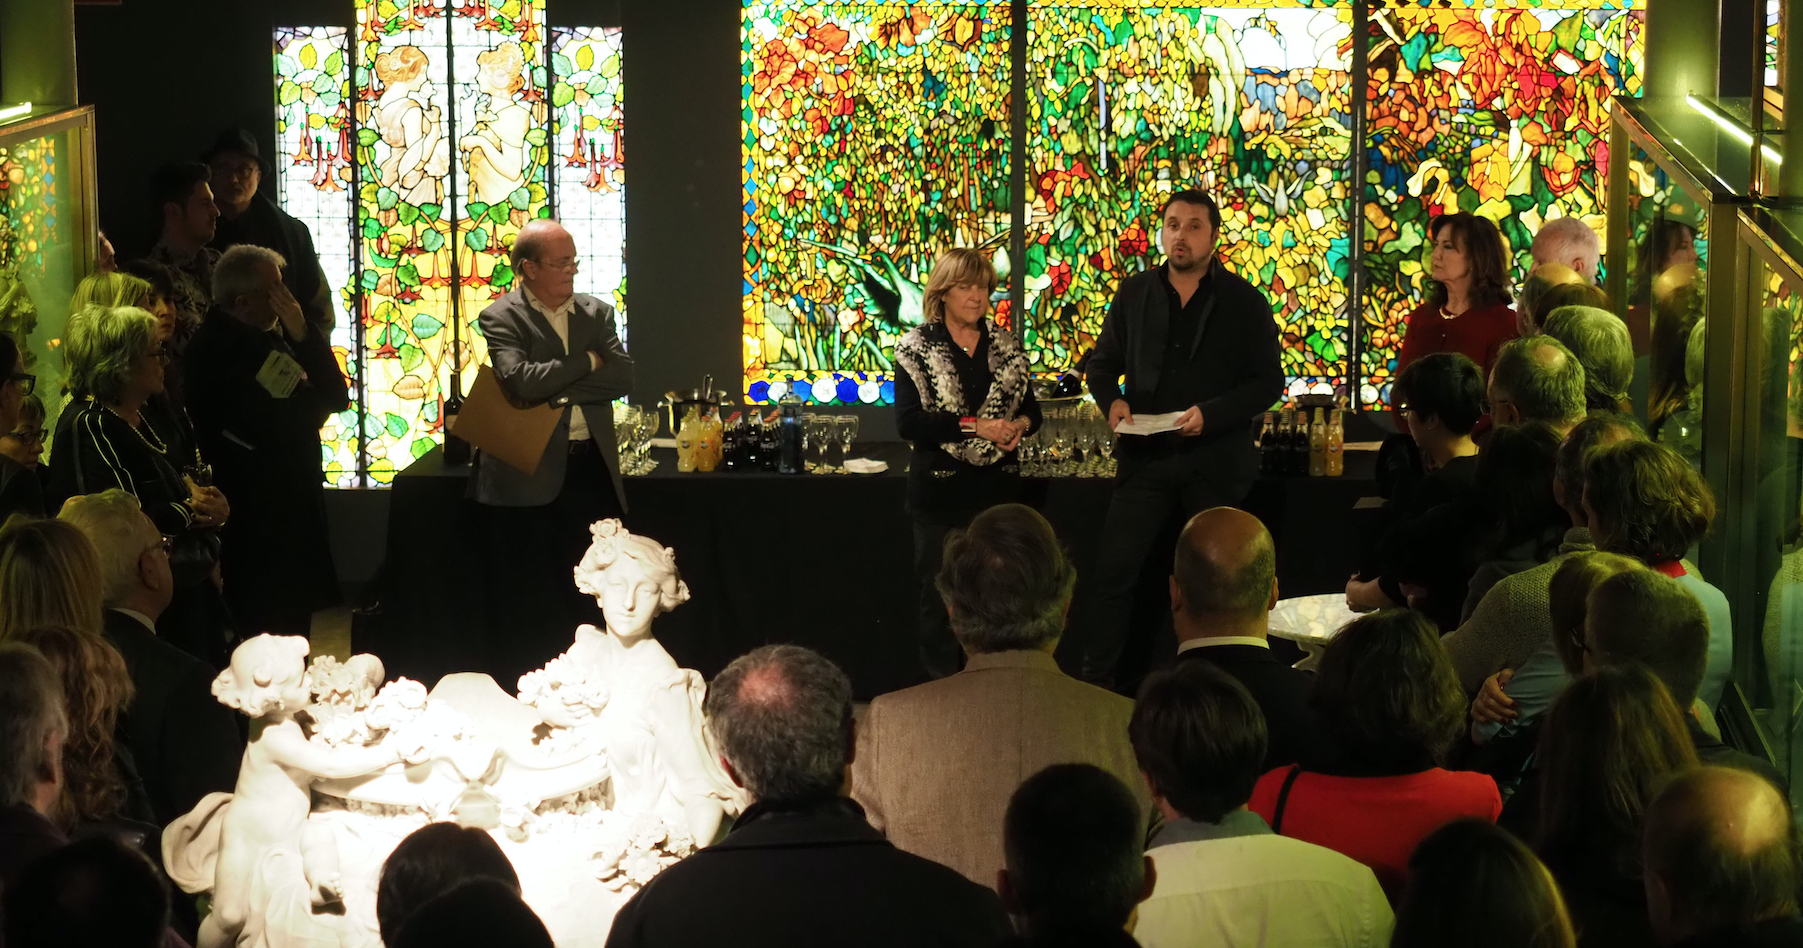 El Museu del Modernisme va acollir la trobada anual de Bonart